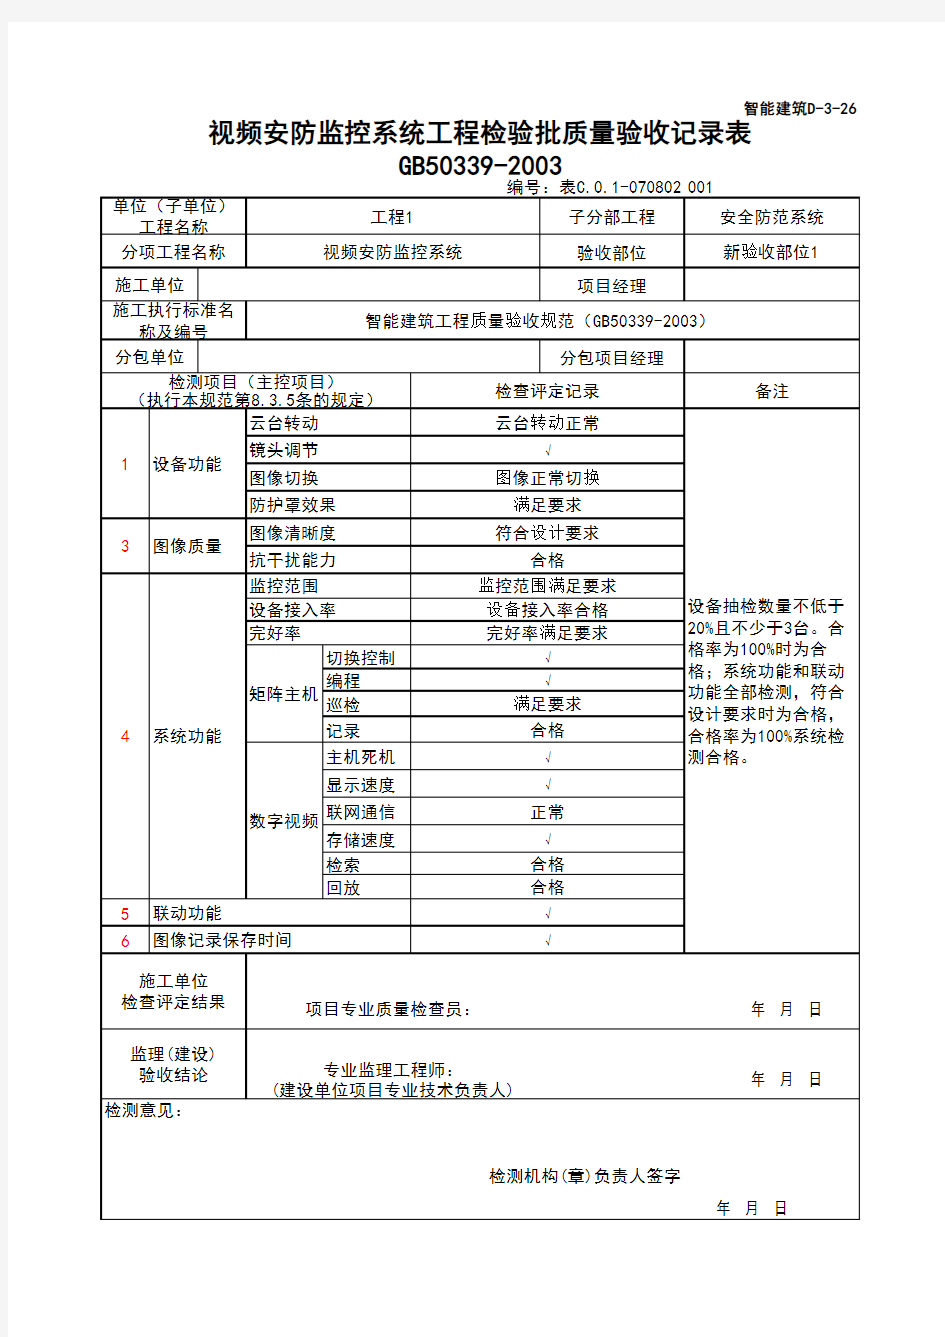 (上海市新版)视频安防监控系统工程检验批质量验收记录表